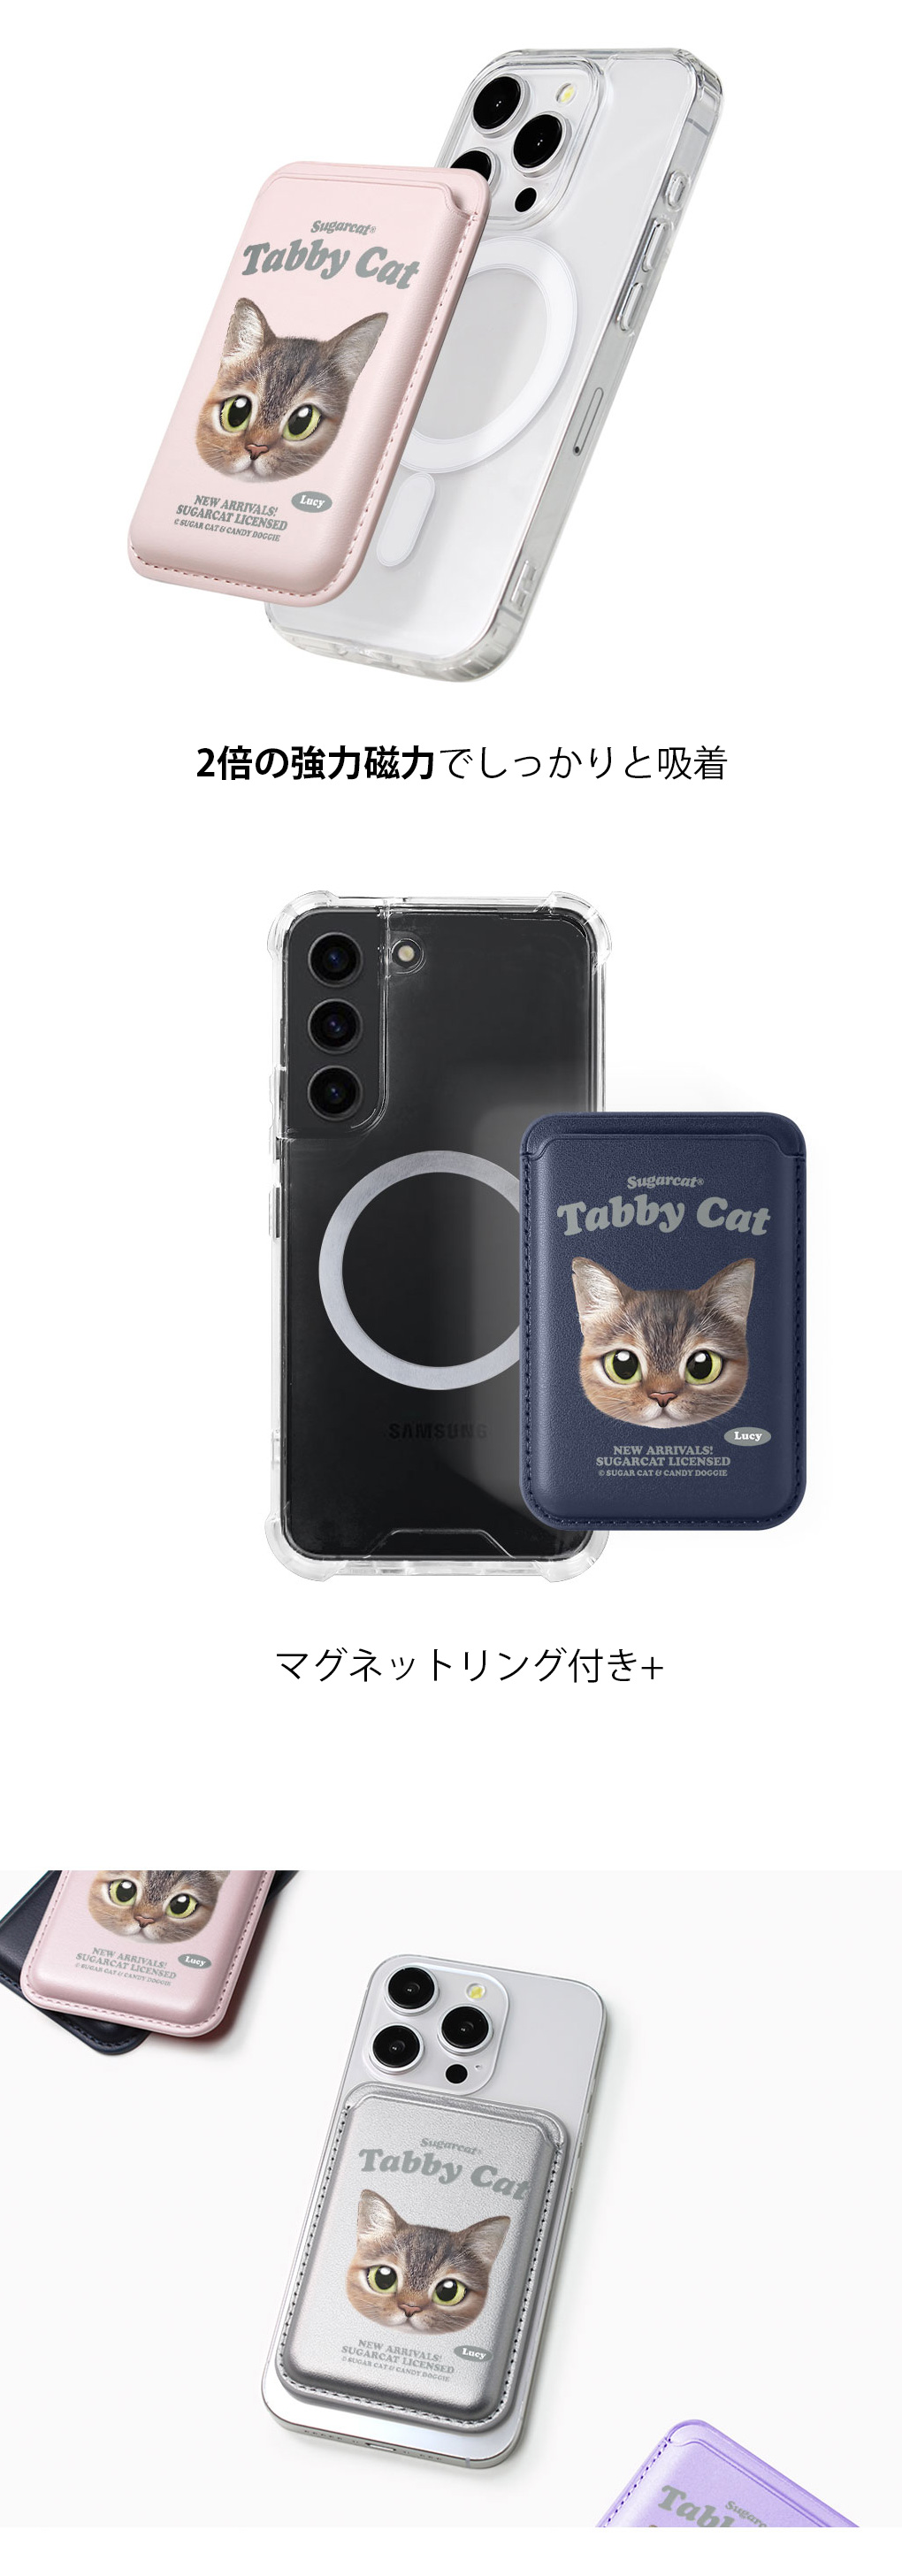 [sugarcat] MagSafe カードケース トラネコ tabby cat / トラネコデザイン マグセーフ MagSafe対応 レザーウォレット カードケース シュガーキャット ペット #クリックポスト